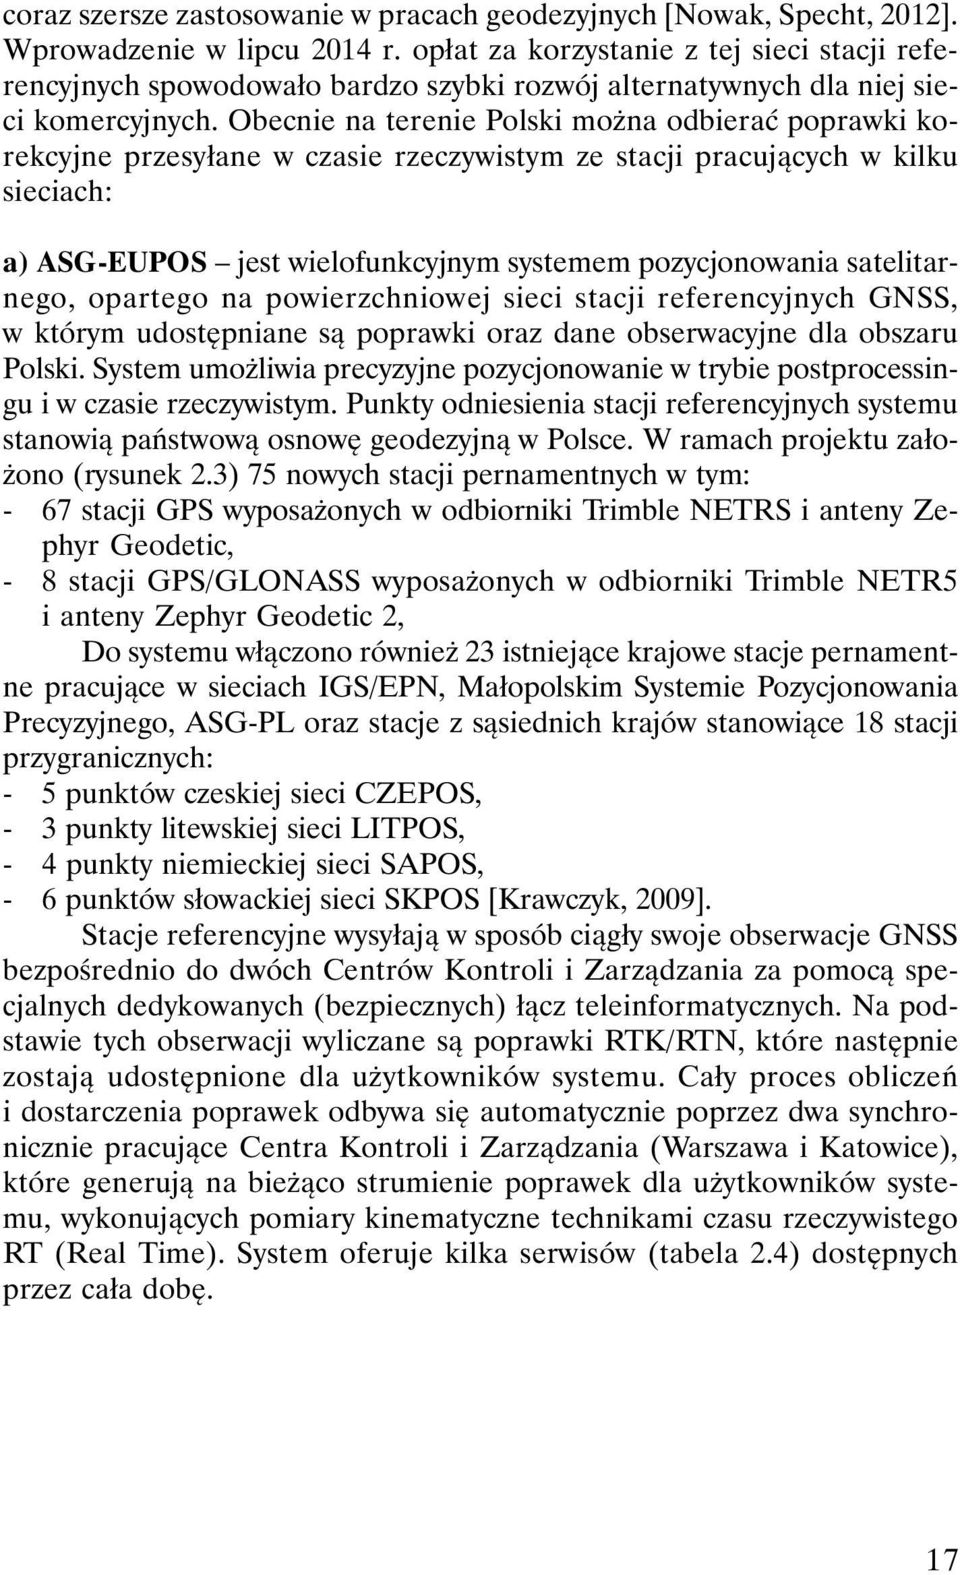 Obecnie na terenie Polski można odbierać poprawki korekcyjne przesyłane w czasie rzeczywistym ze stacji pracujących w kilku sieciach: a) ASG-EUPOS jest wielofunkcyjnym systemem pozycjonowania